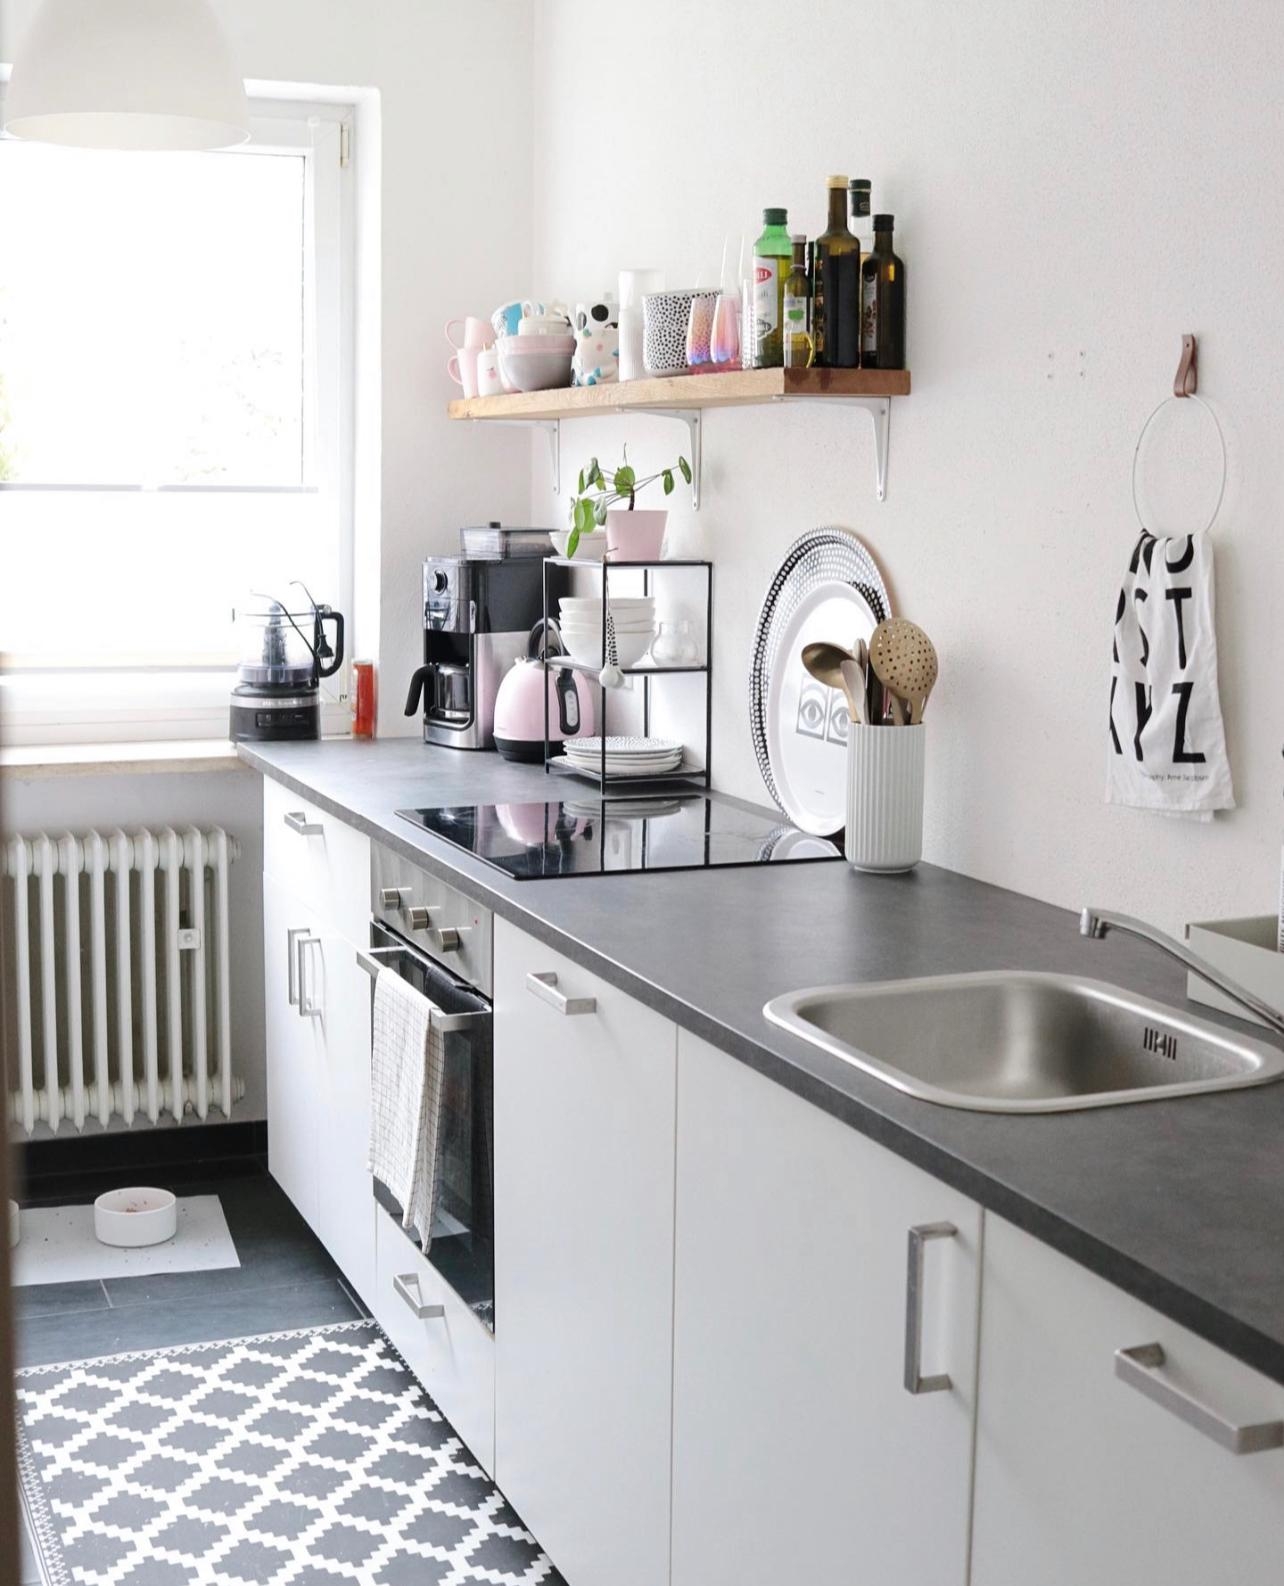 Small Kitchen Goals 
#skandi #küche #skandiküche #ikeaküche #smallkitchen #nordichome #scandinavian #küchenideen